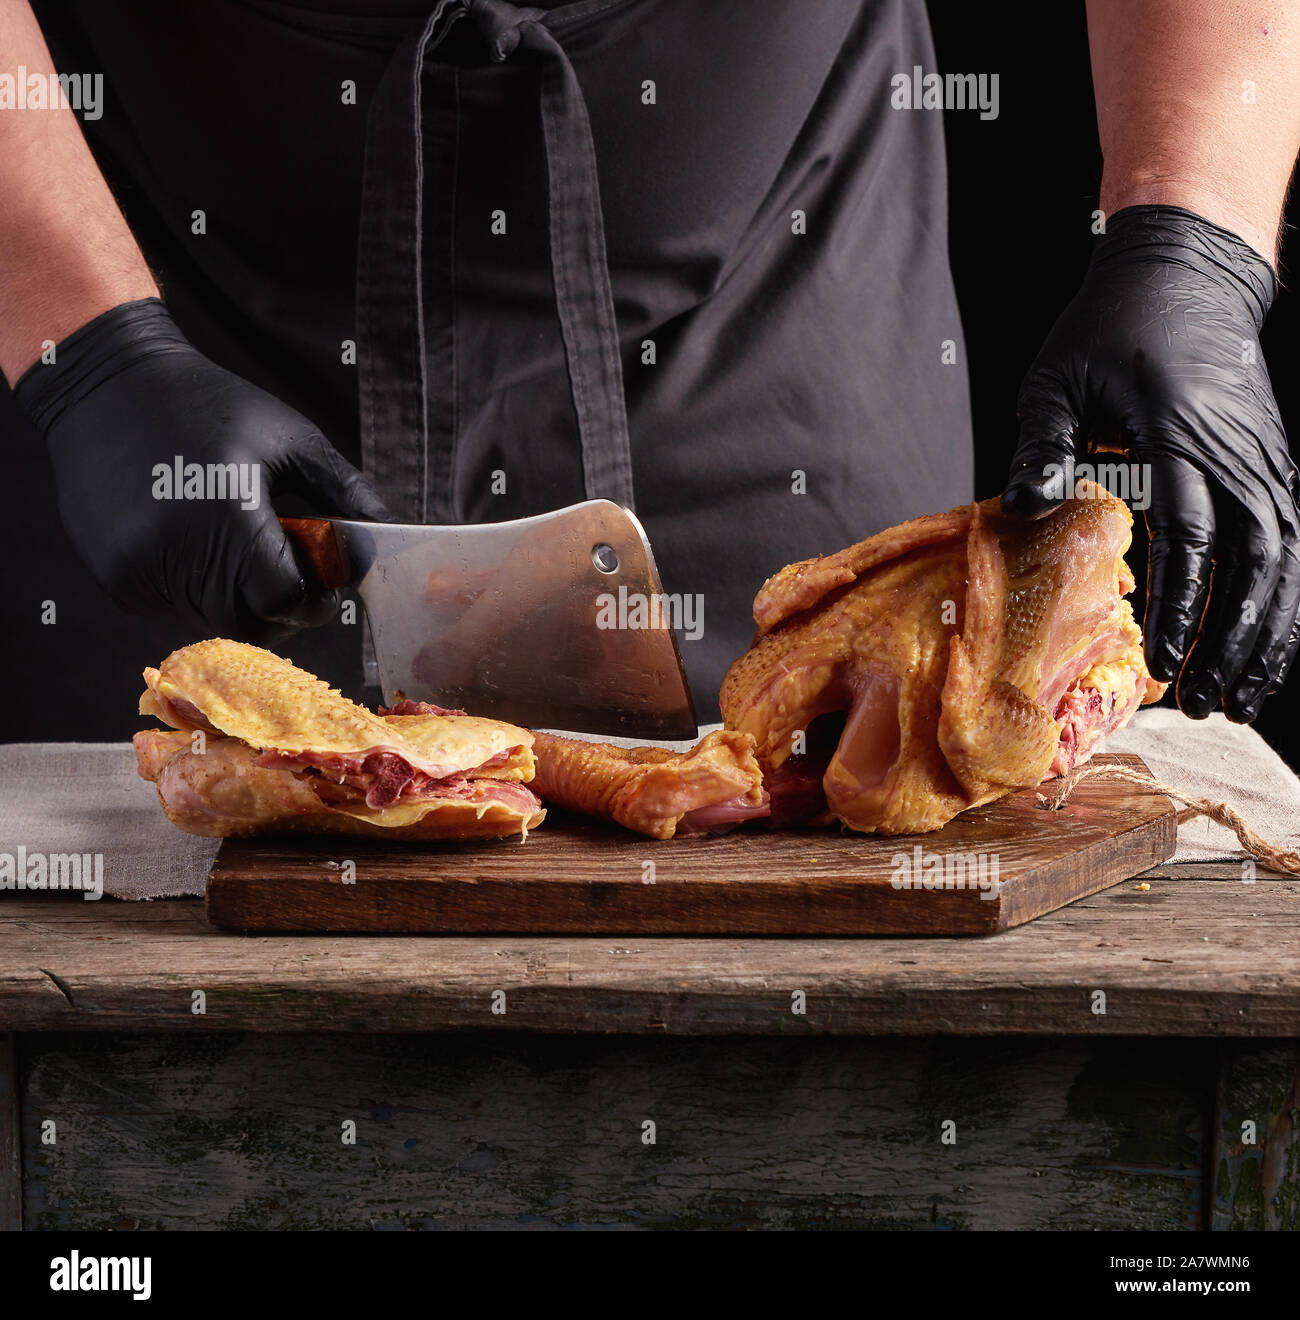 Koch in schwarzen Uniform und Latex Handschuhe Zerkleinern von rohem Huhn  in Stücke auf einem braunen Holzbrett, dunklen Hintergrund, kochen Prozess  Stockfotografie - Alamy